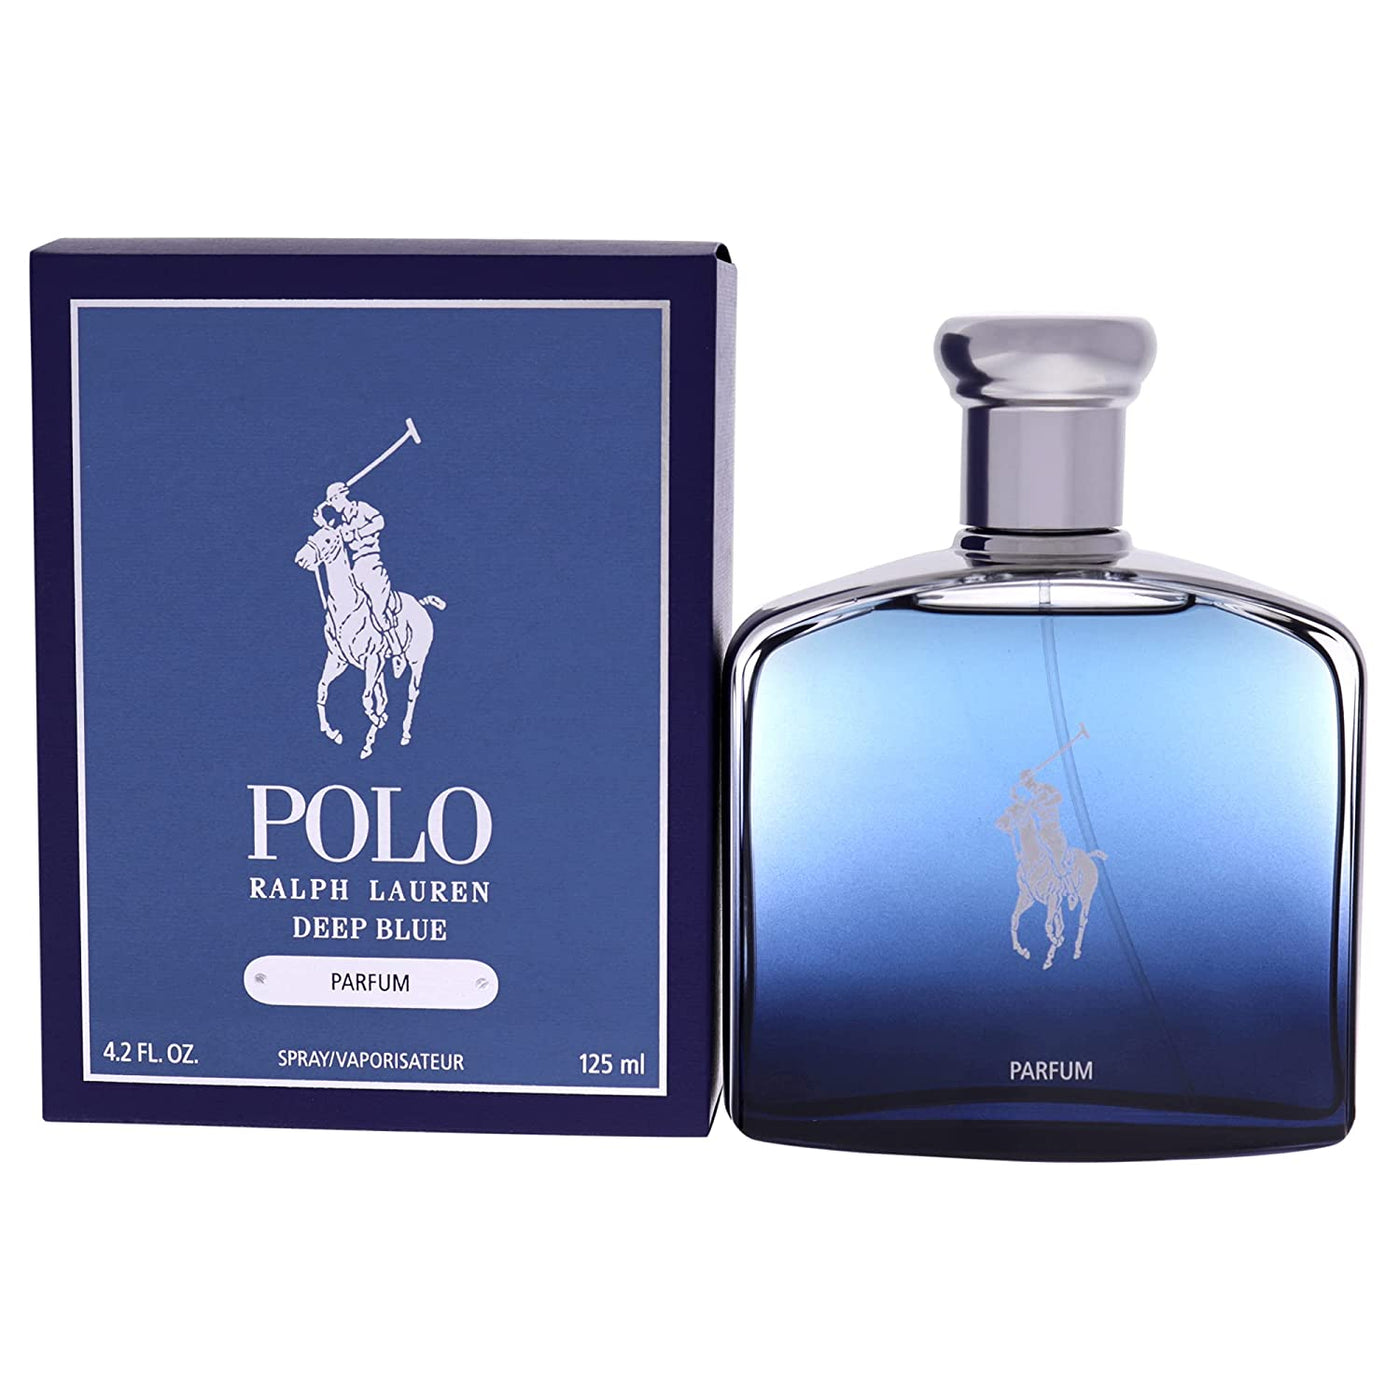 Deep Blue Parfum By Ralph Lauren125mlParfum 